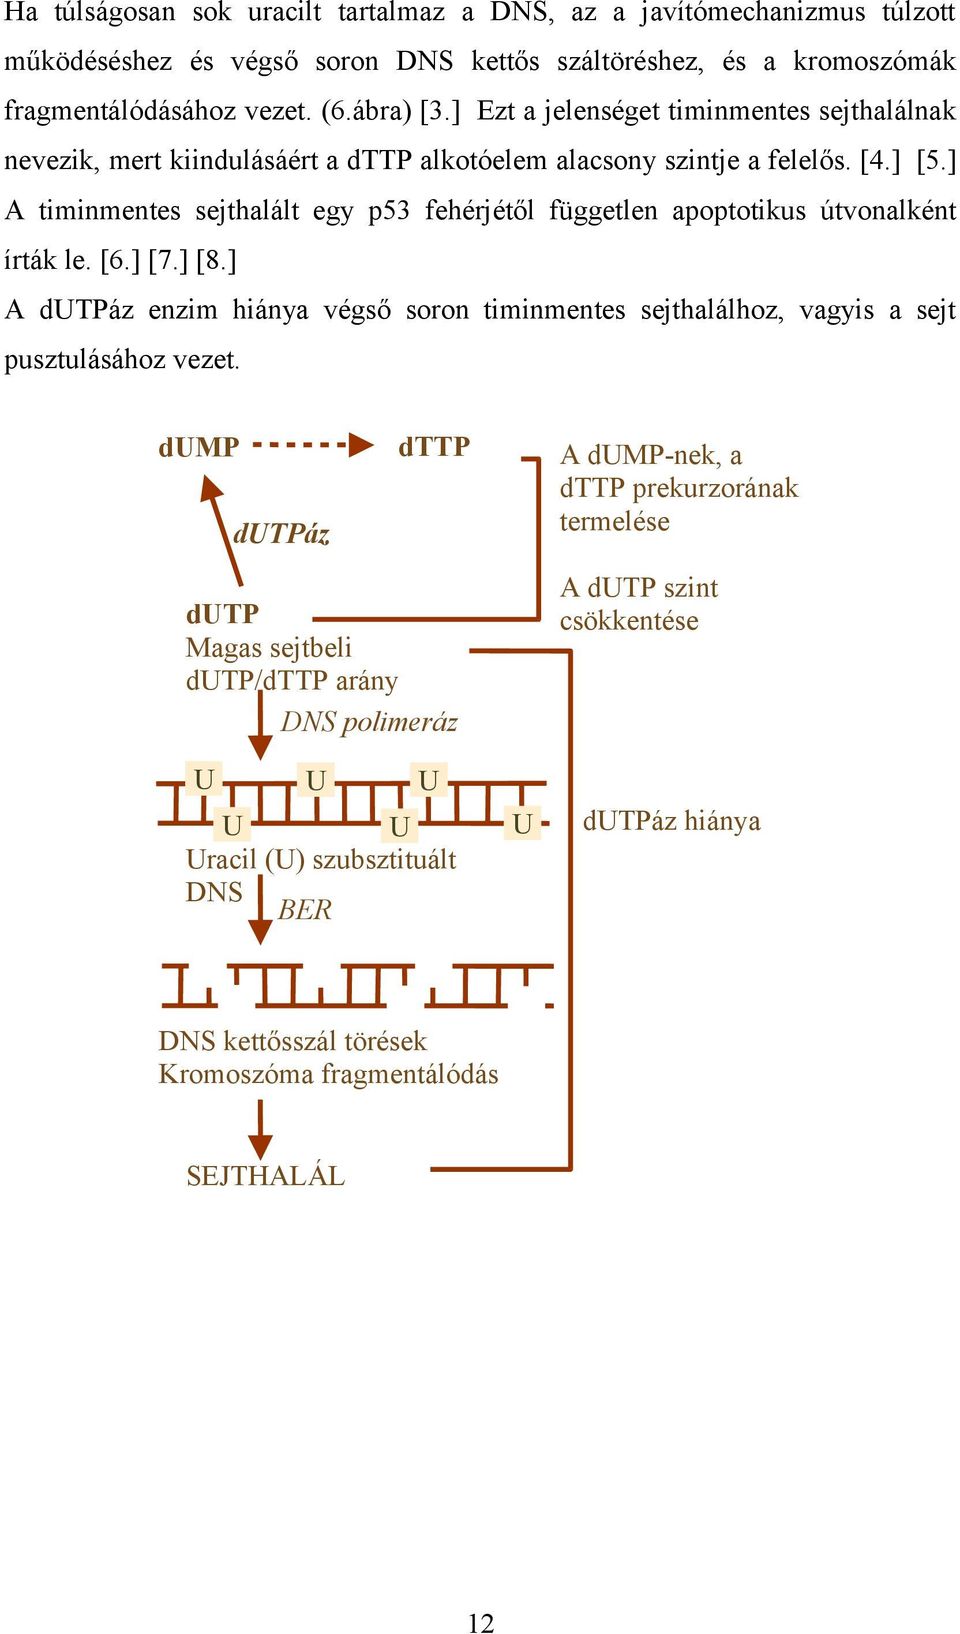 ] A timinmentes sejthalált egy p53 fehérjétől független apoptotikus útvonalként írták le. [6.] [7.] [8.